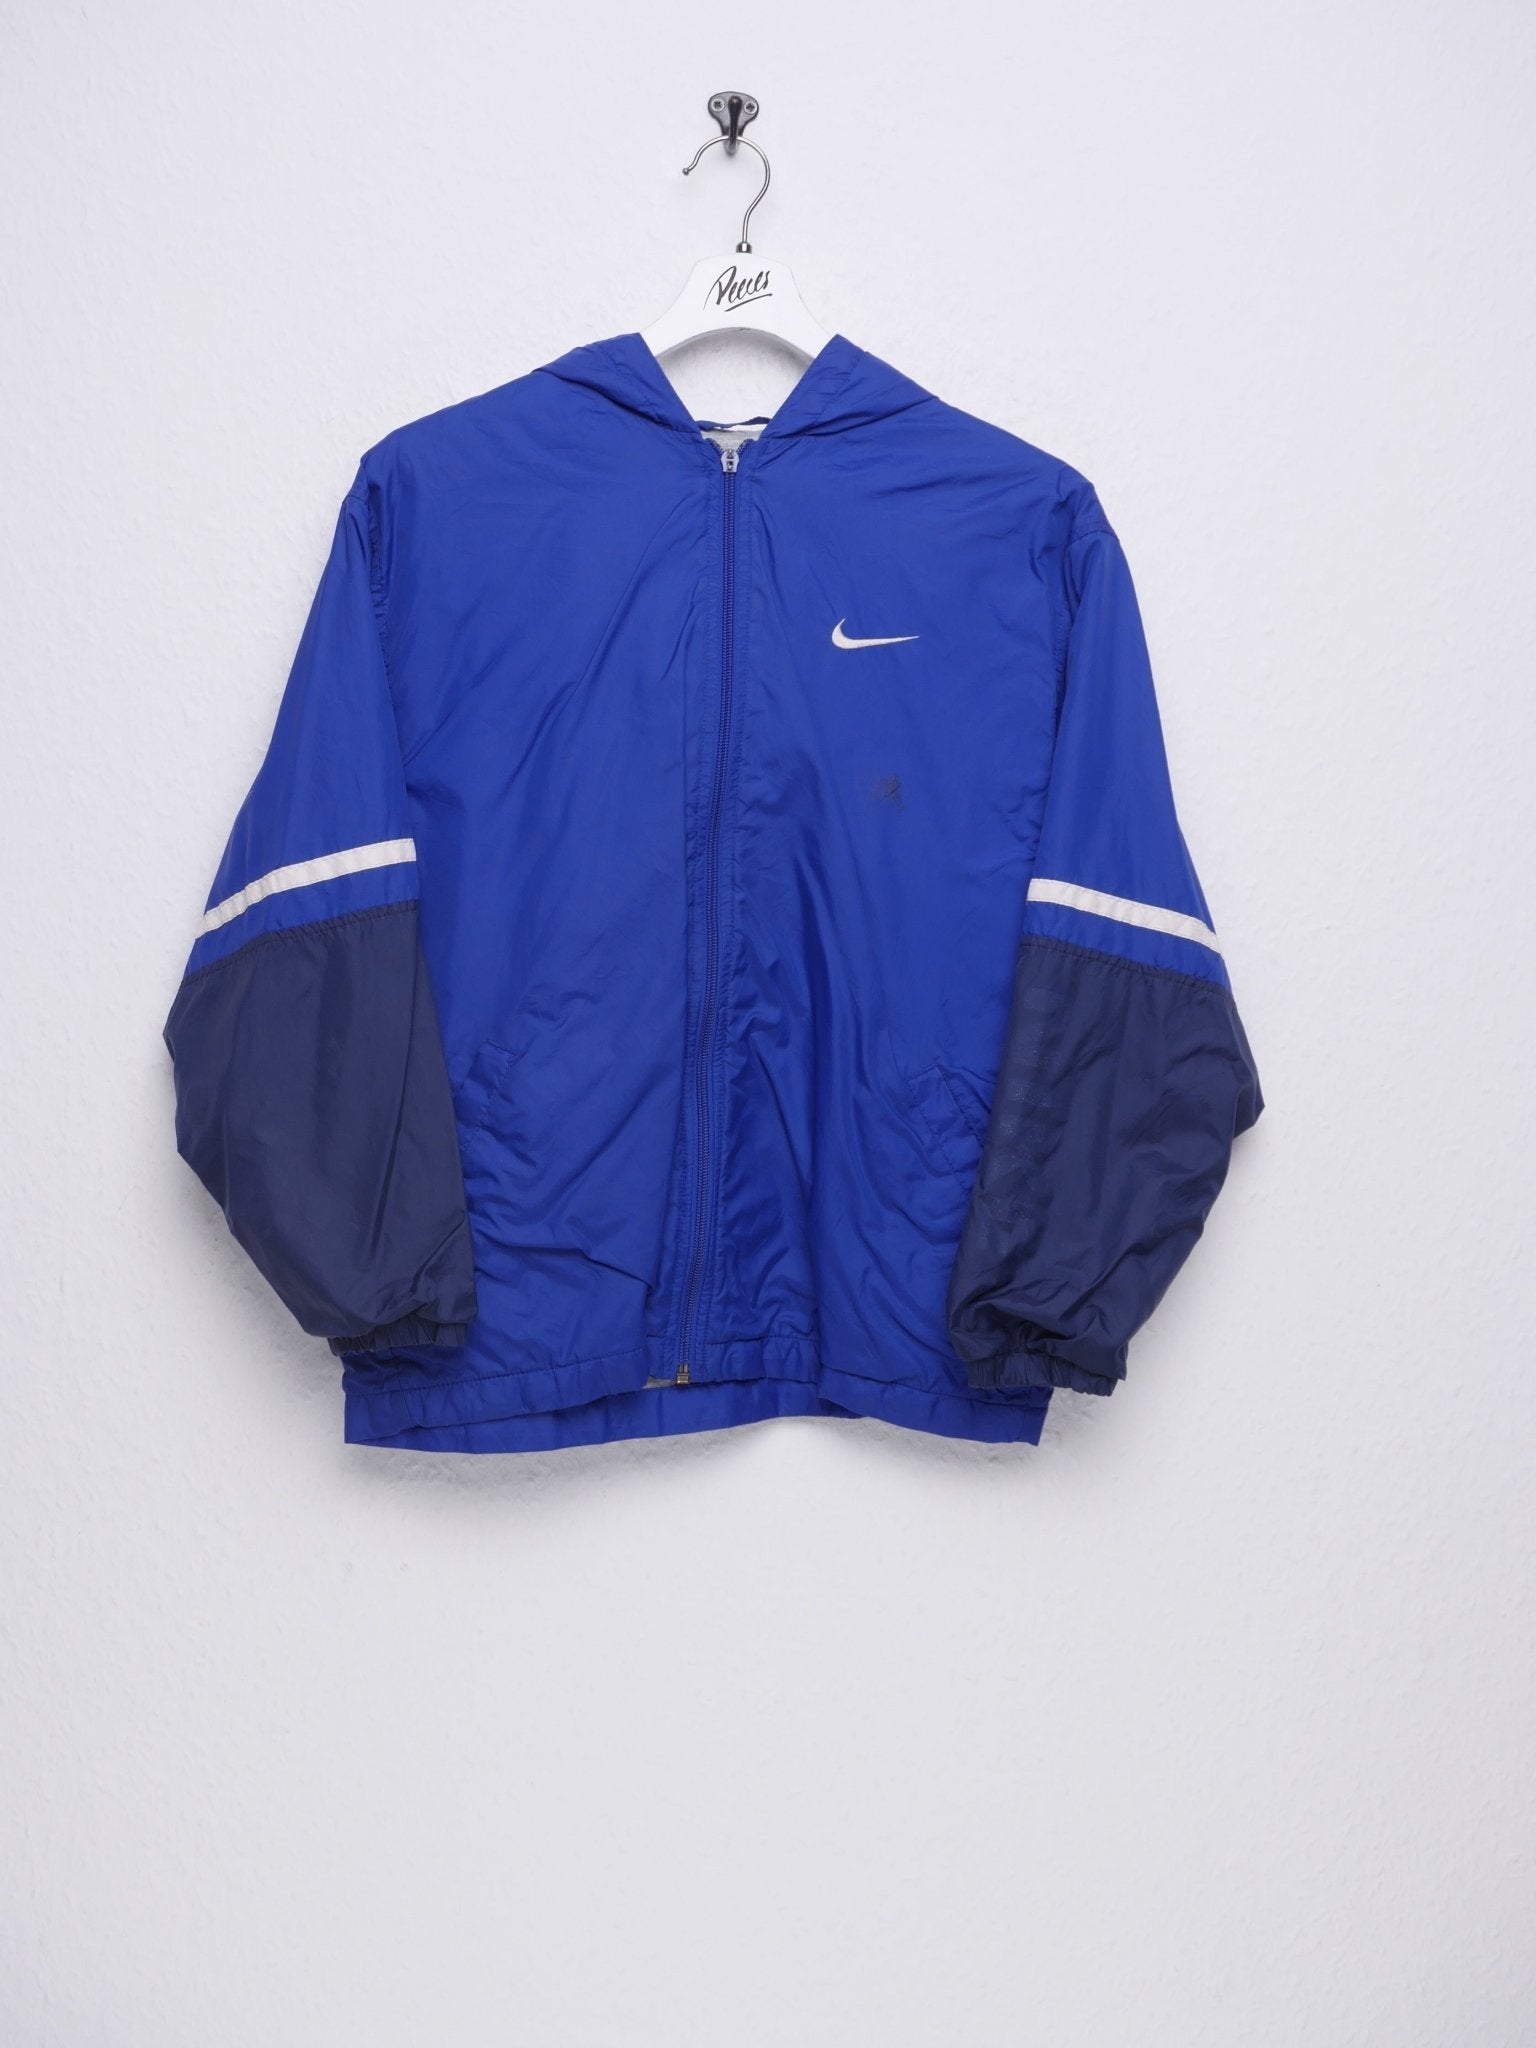 Nike embroidered Swoosh blue Vintage Track Jacke - Peeces